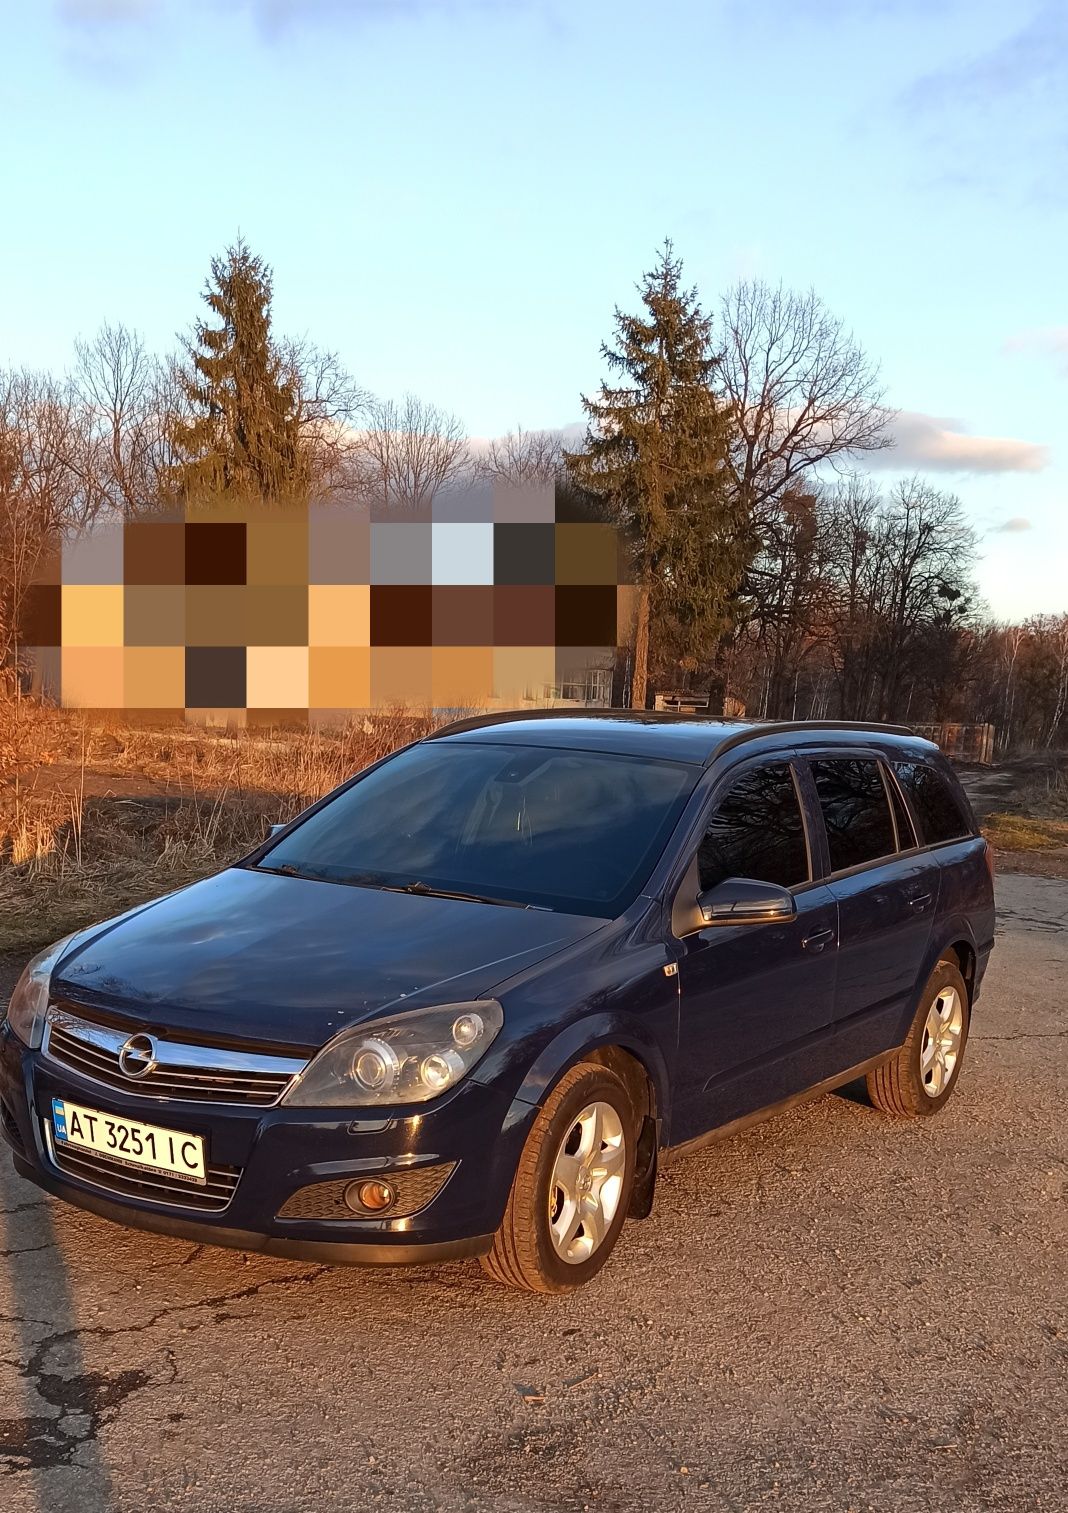 Продам Opel Astra